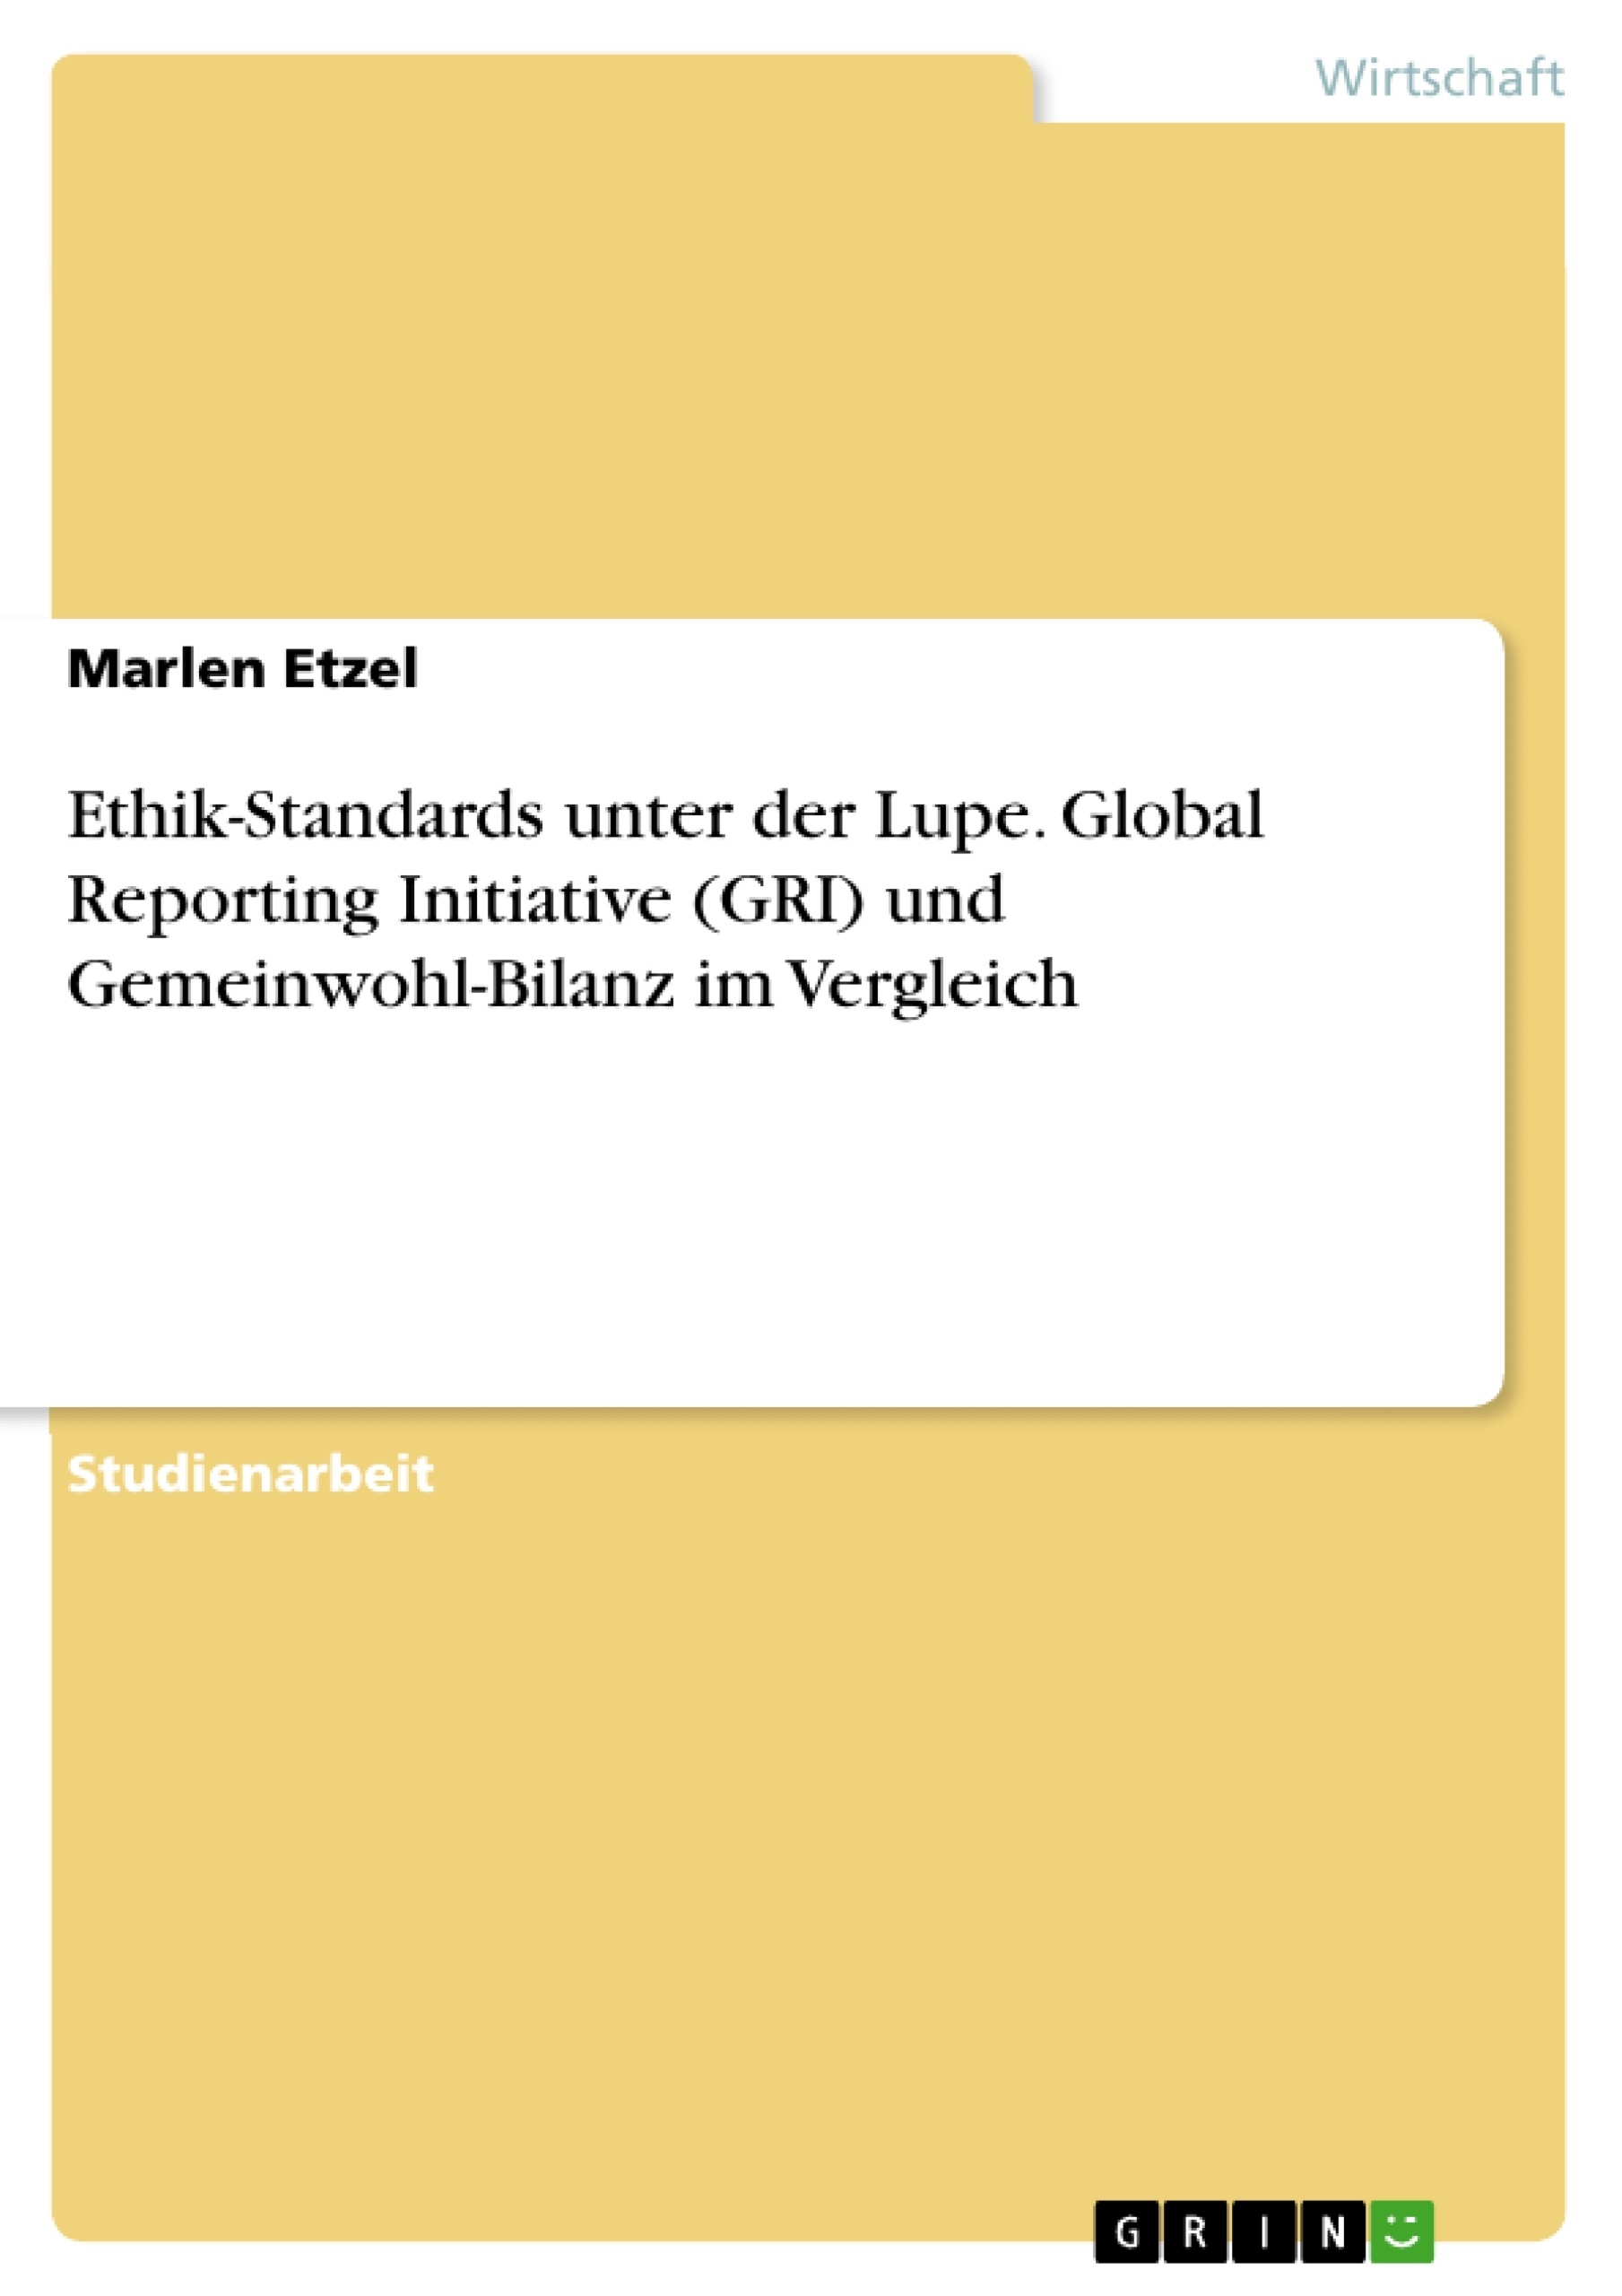 Titel: Ethik-Standards unter der Lupe. Global Reporting Initiative (GRI) und Gemeinwohl-Bilanz im Vergleich